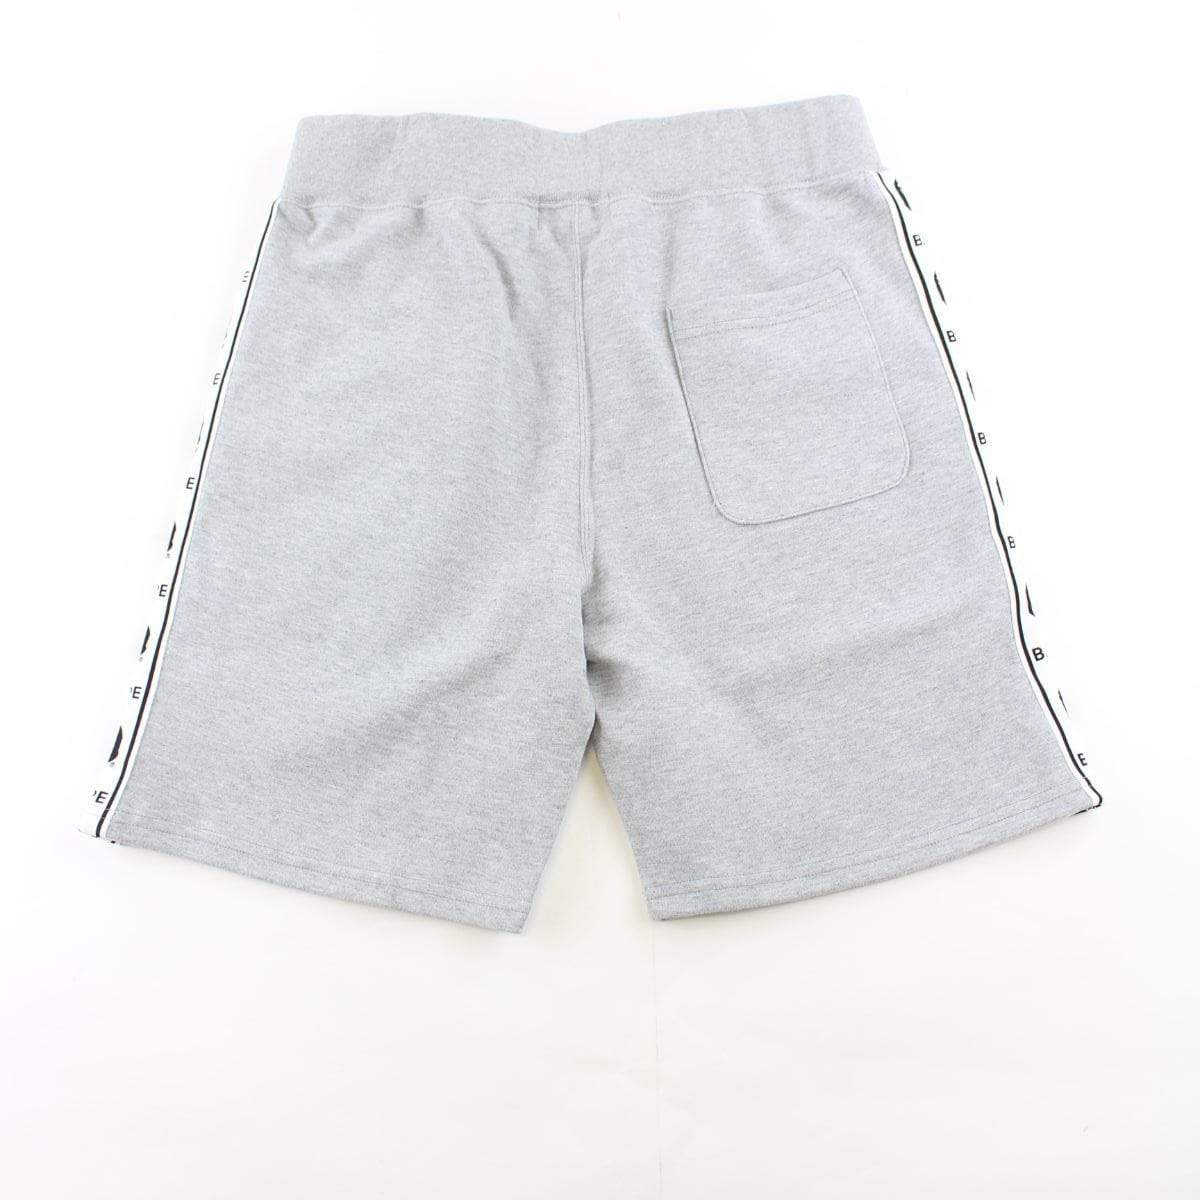 Bape Side Stripe Logo Shorts Grey - SaruGeneral